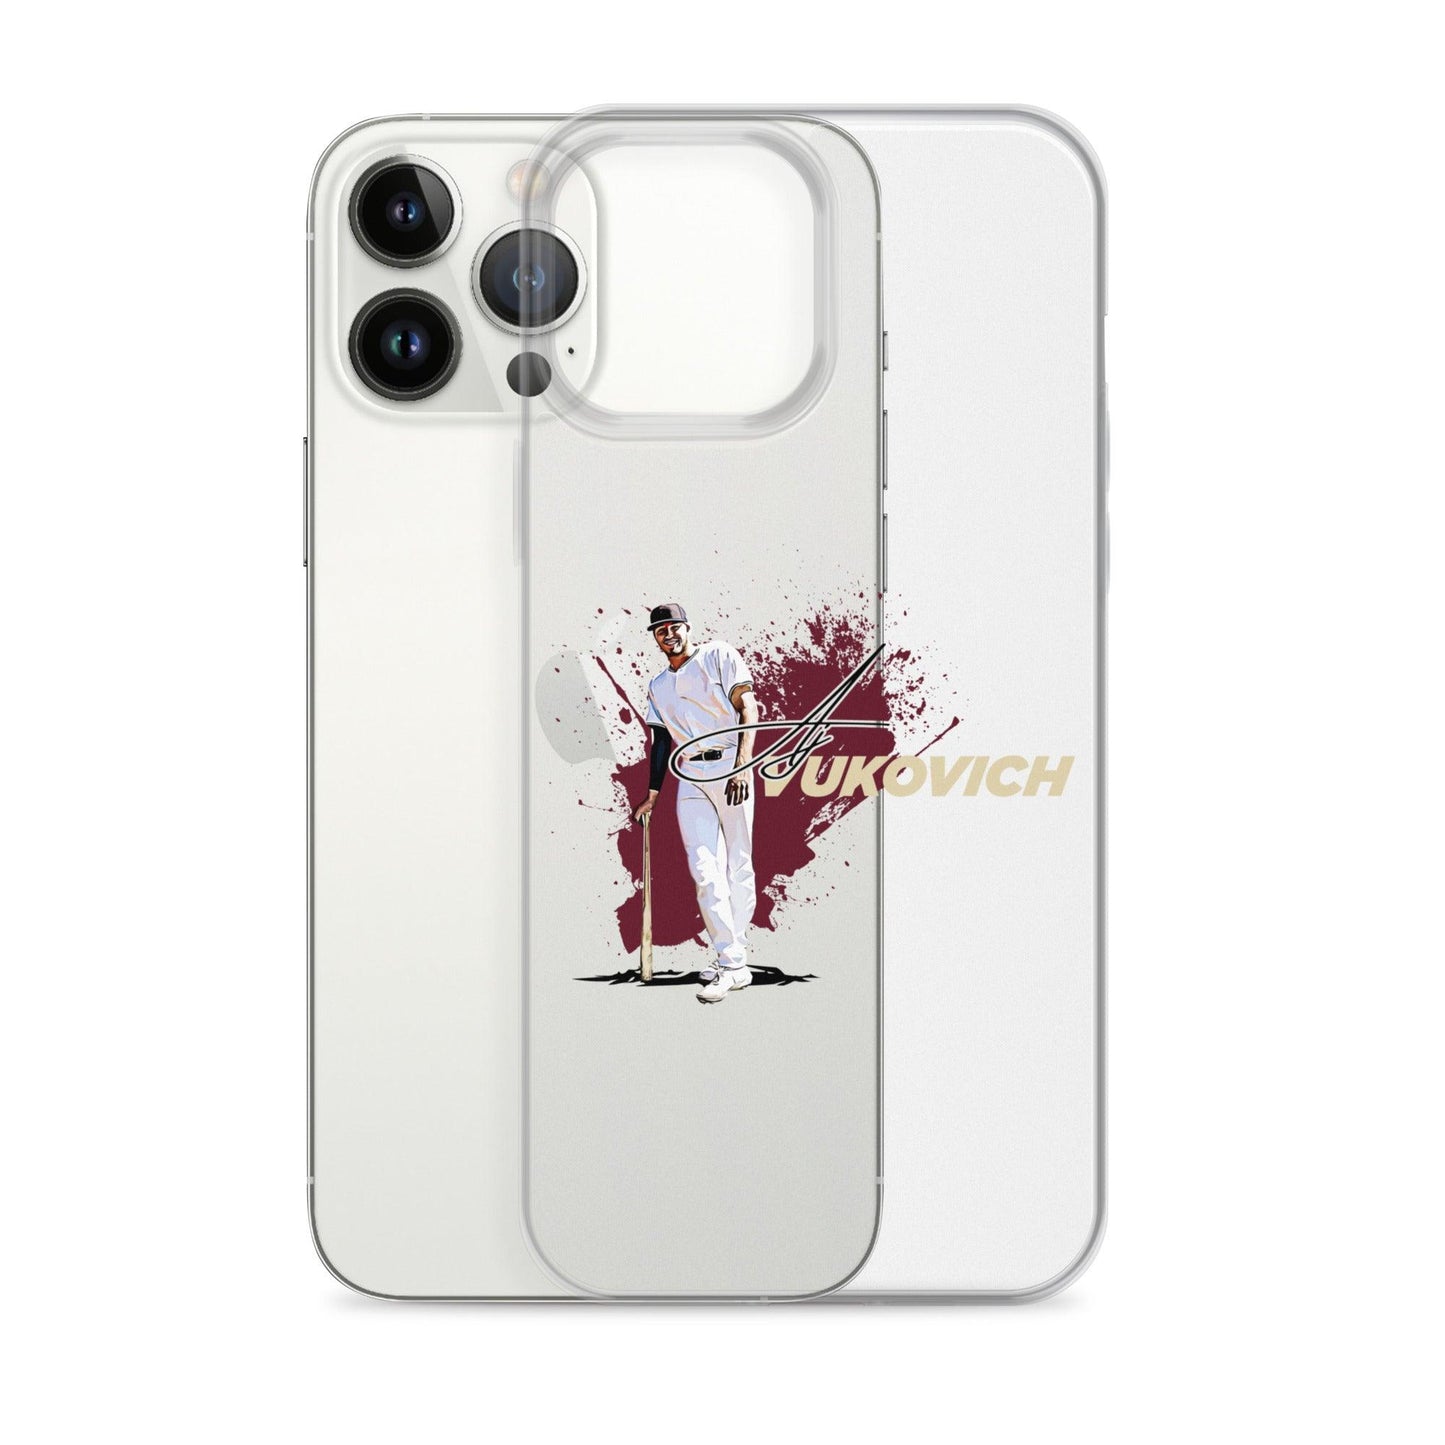 AJ Vukovich “Primetime” iPhone Case - Fan Arch